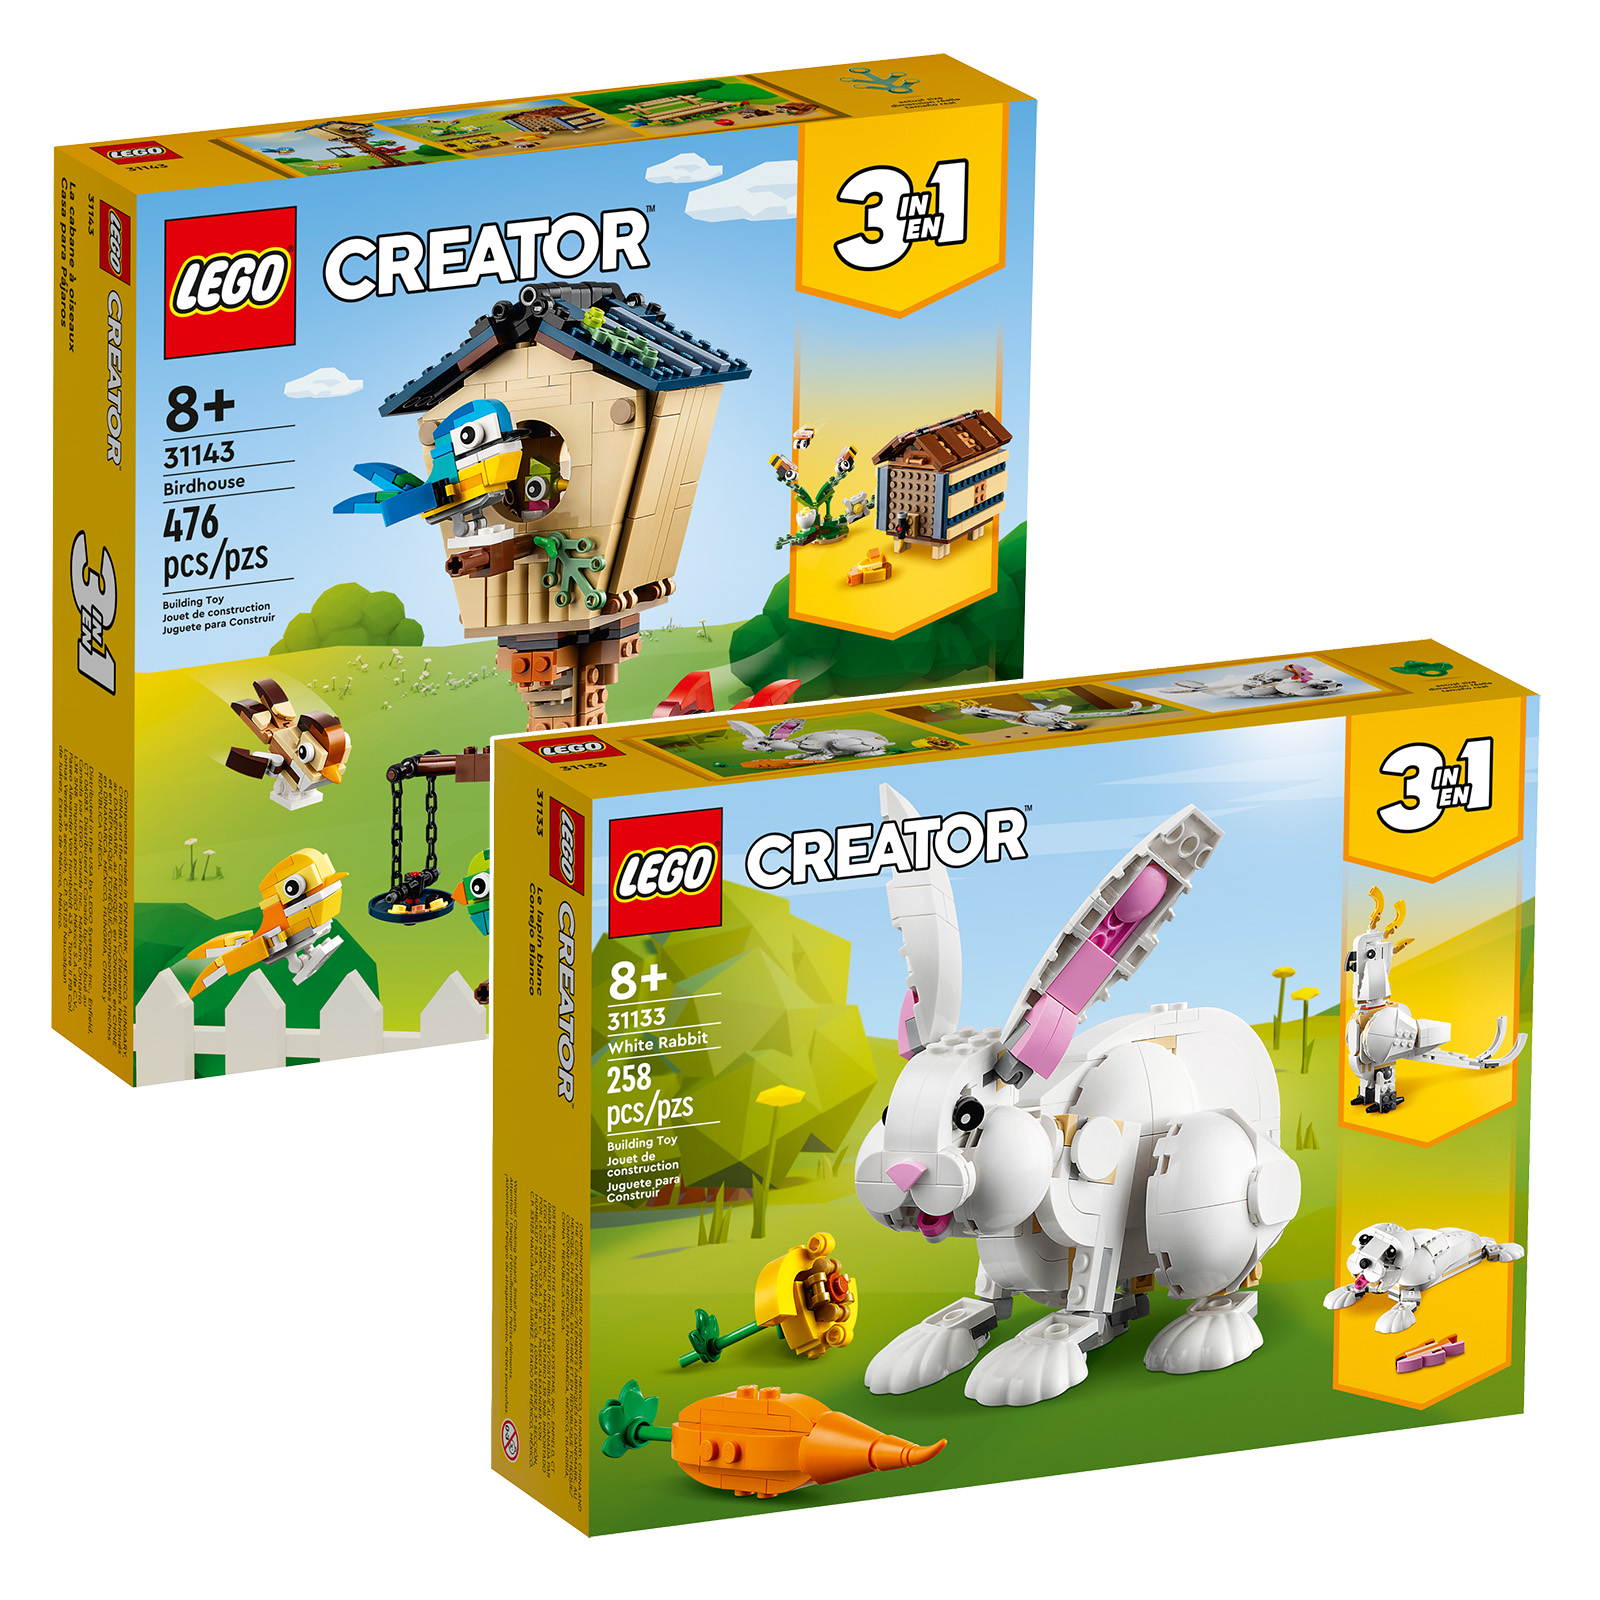 LEGO Creator 2023 mới: hai tài liệu tham khảo mới đang trực tuyến trên Cửa hàng